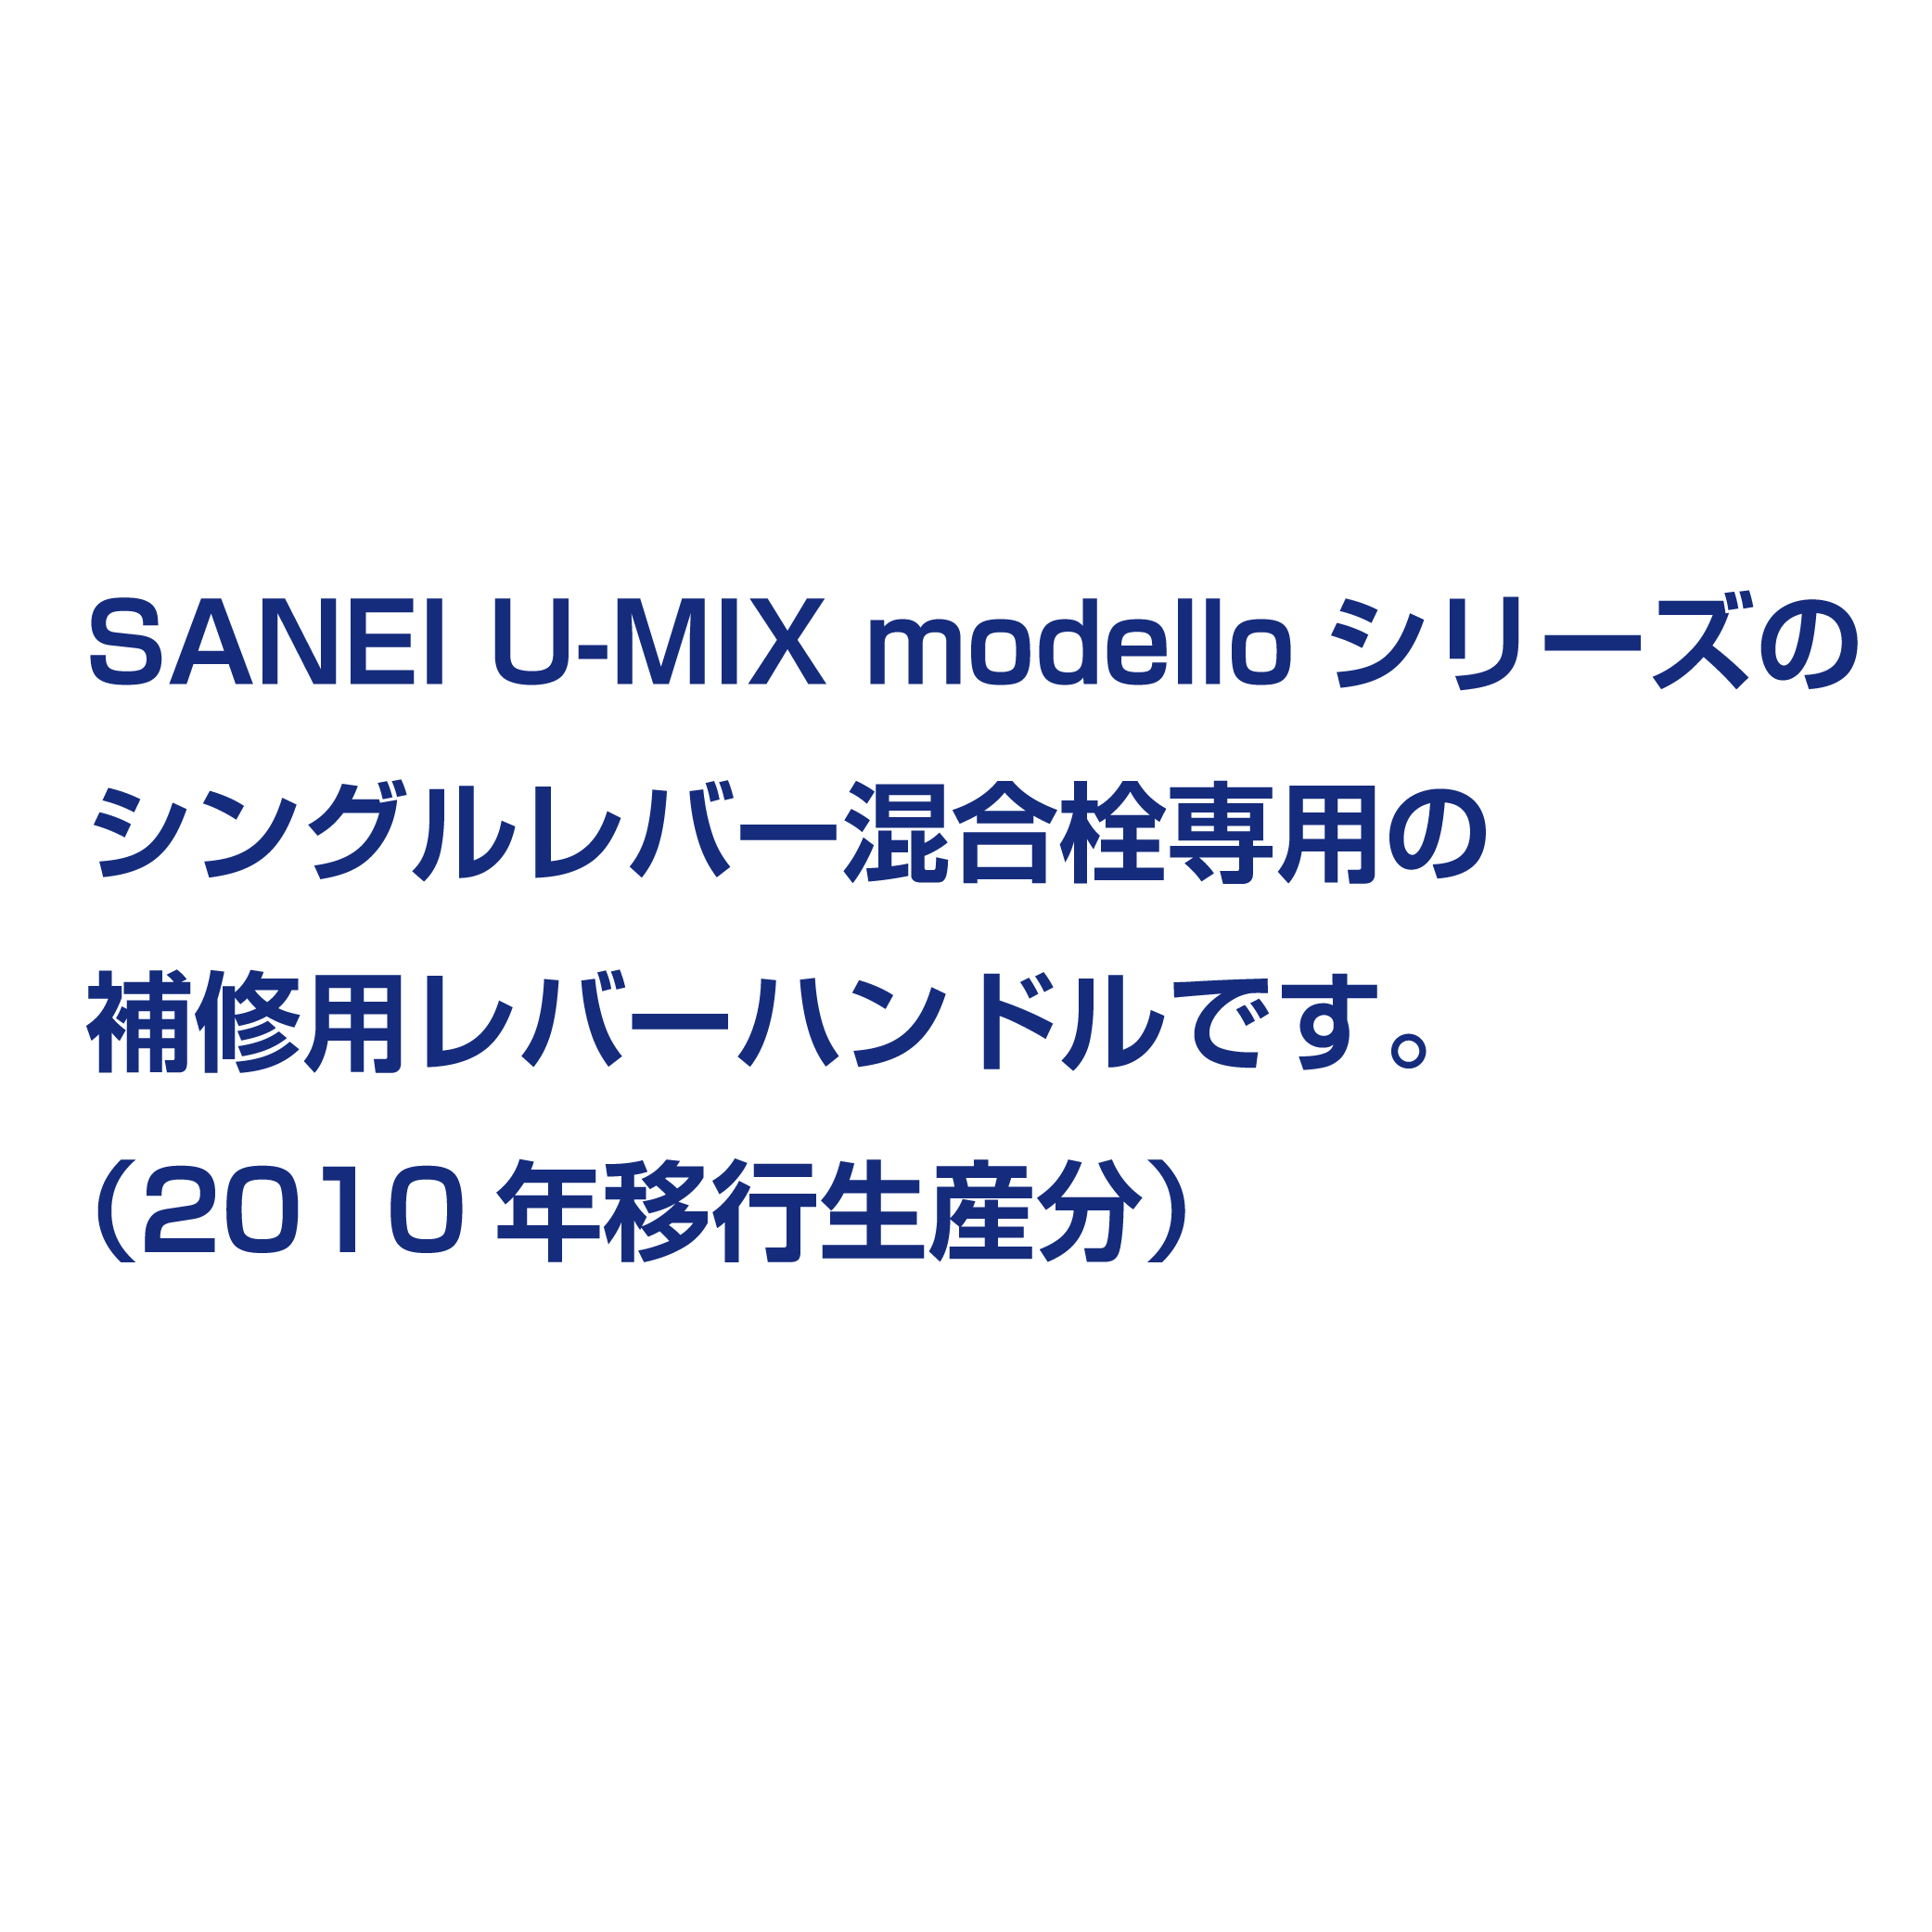 SANEI U-MIX modelloシリーズ戦闘のレバーハンドル